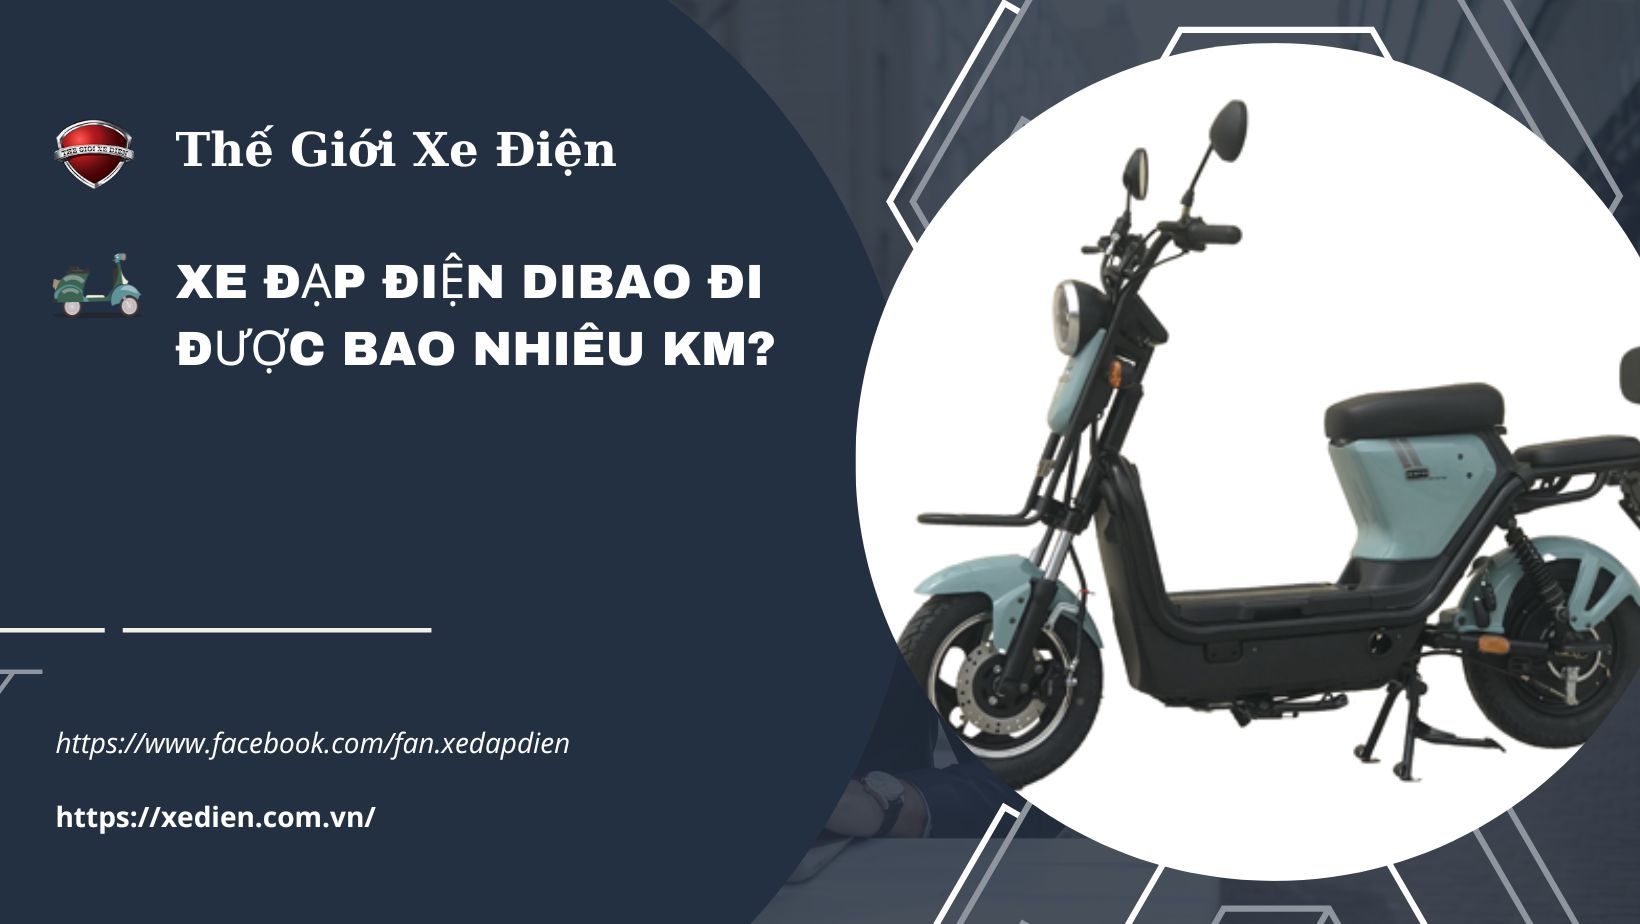 Xe đạp điện Dibao đi được bao nhiêu km?